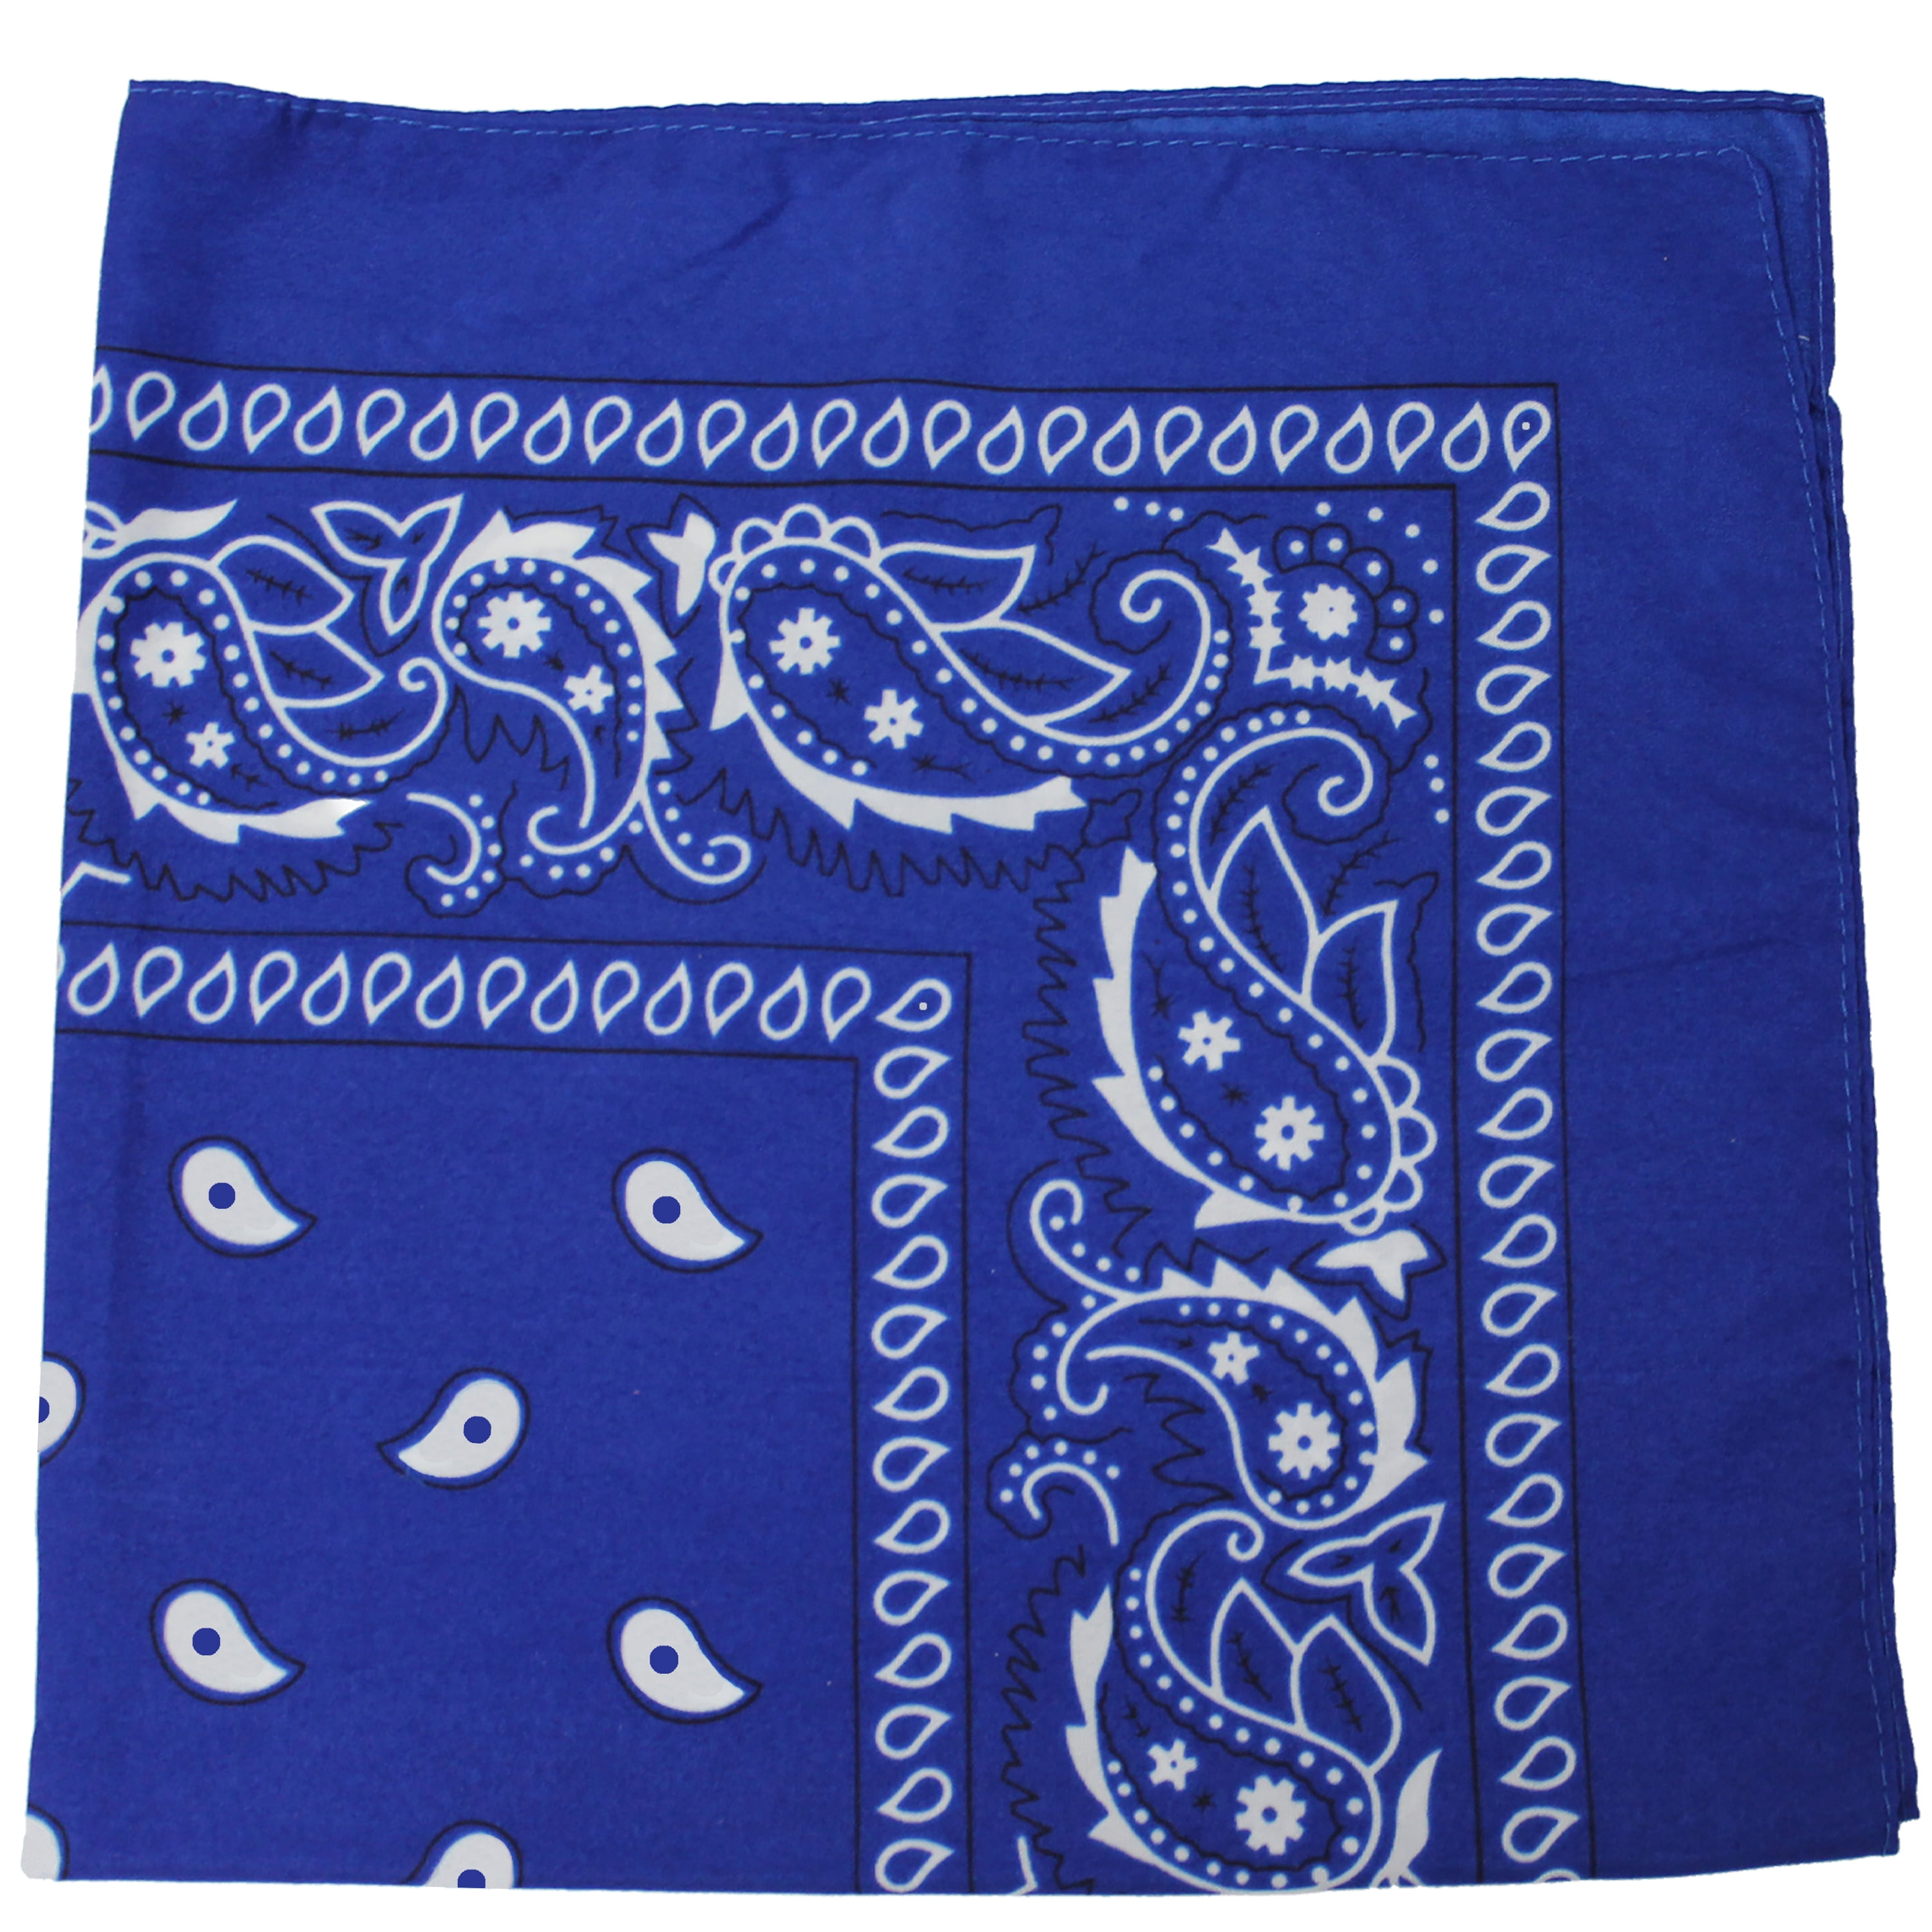 New 27" x 27" Oversized Navy Blue Paisley Bandana Handkerchief Scarf 100% Cotton 